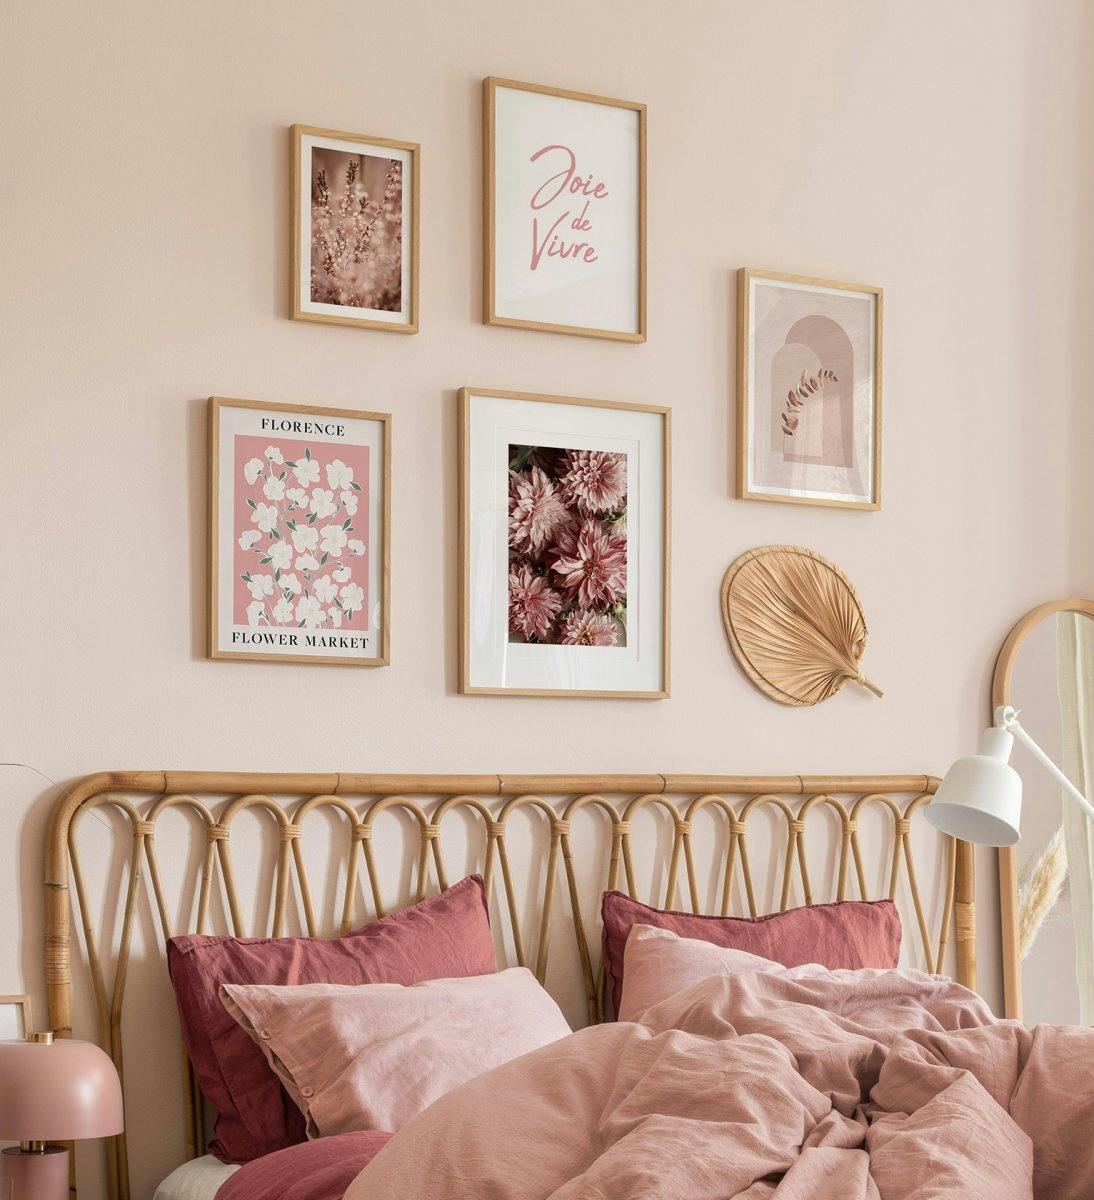 جدار معرض رومانسي باللون الوردي والبيج مع إطارات من خشب البلوط لغرفة النوم